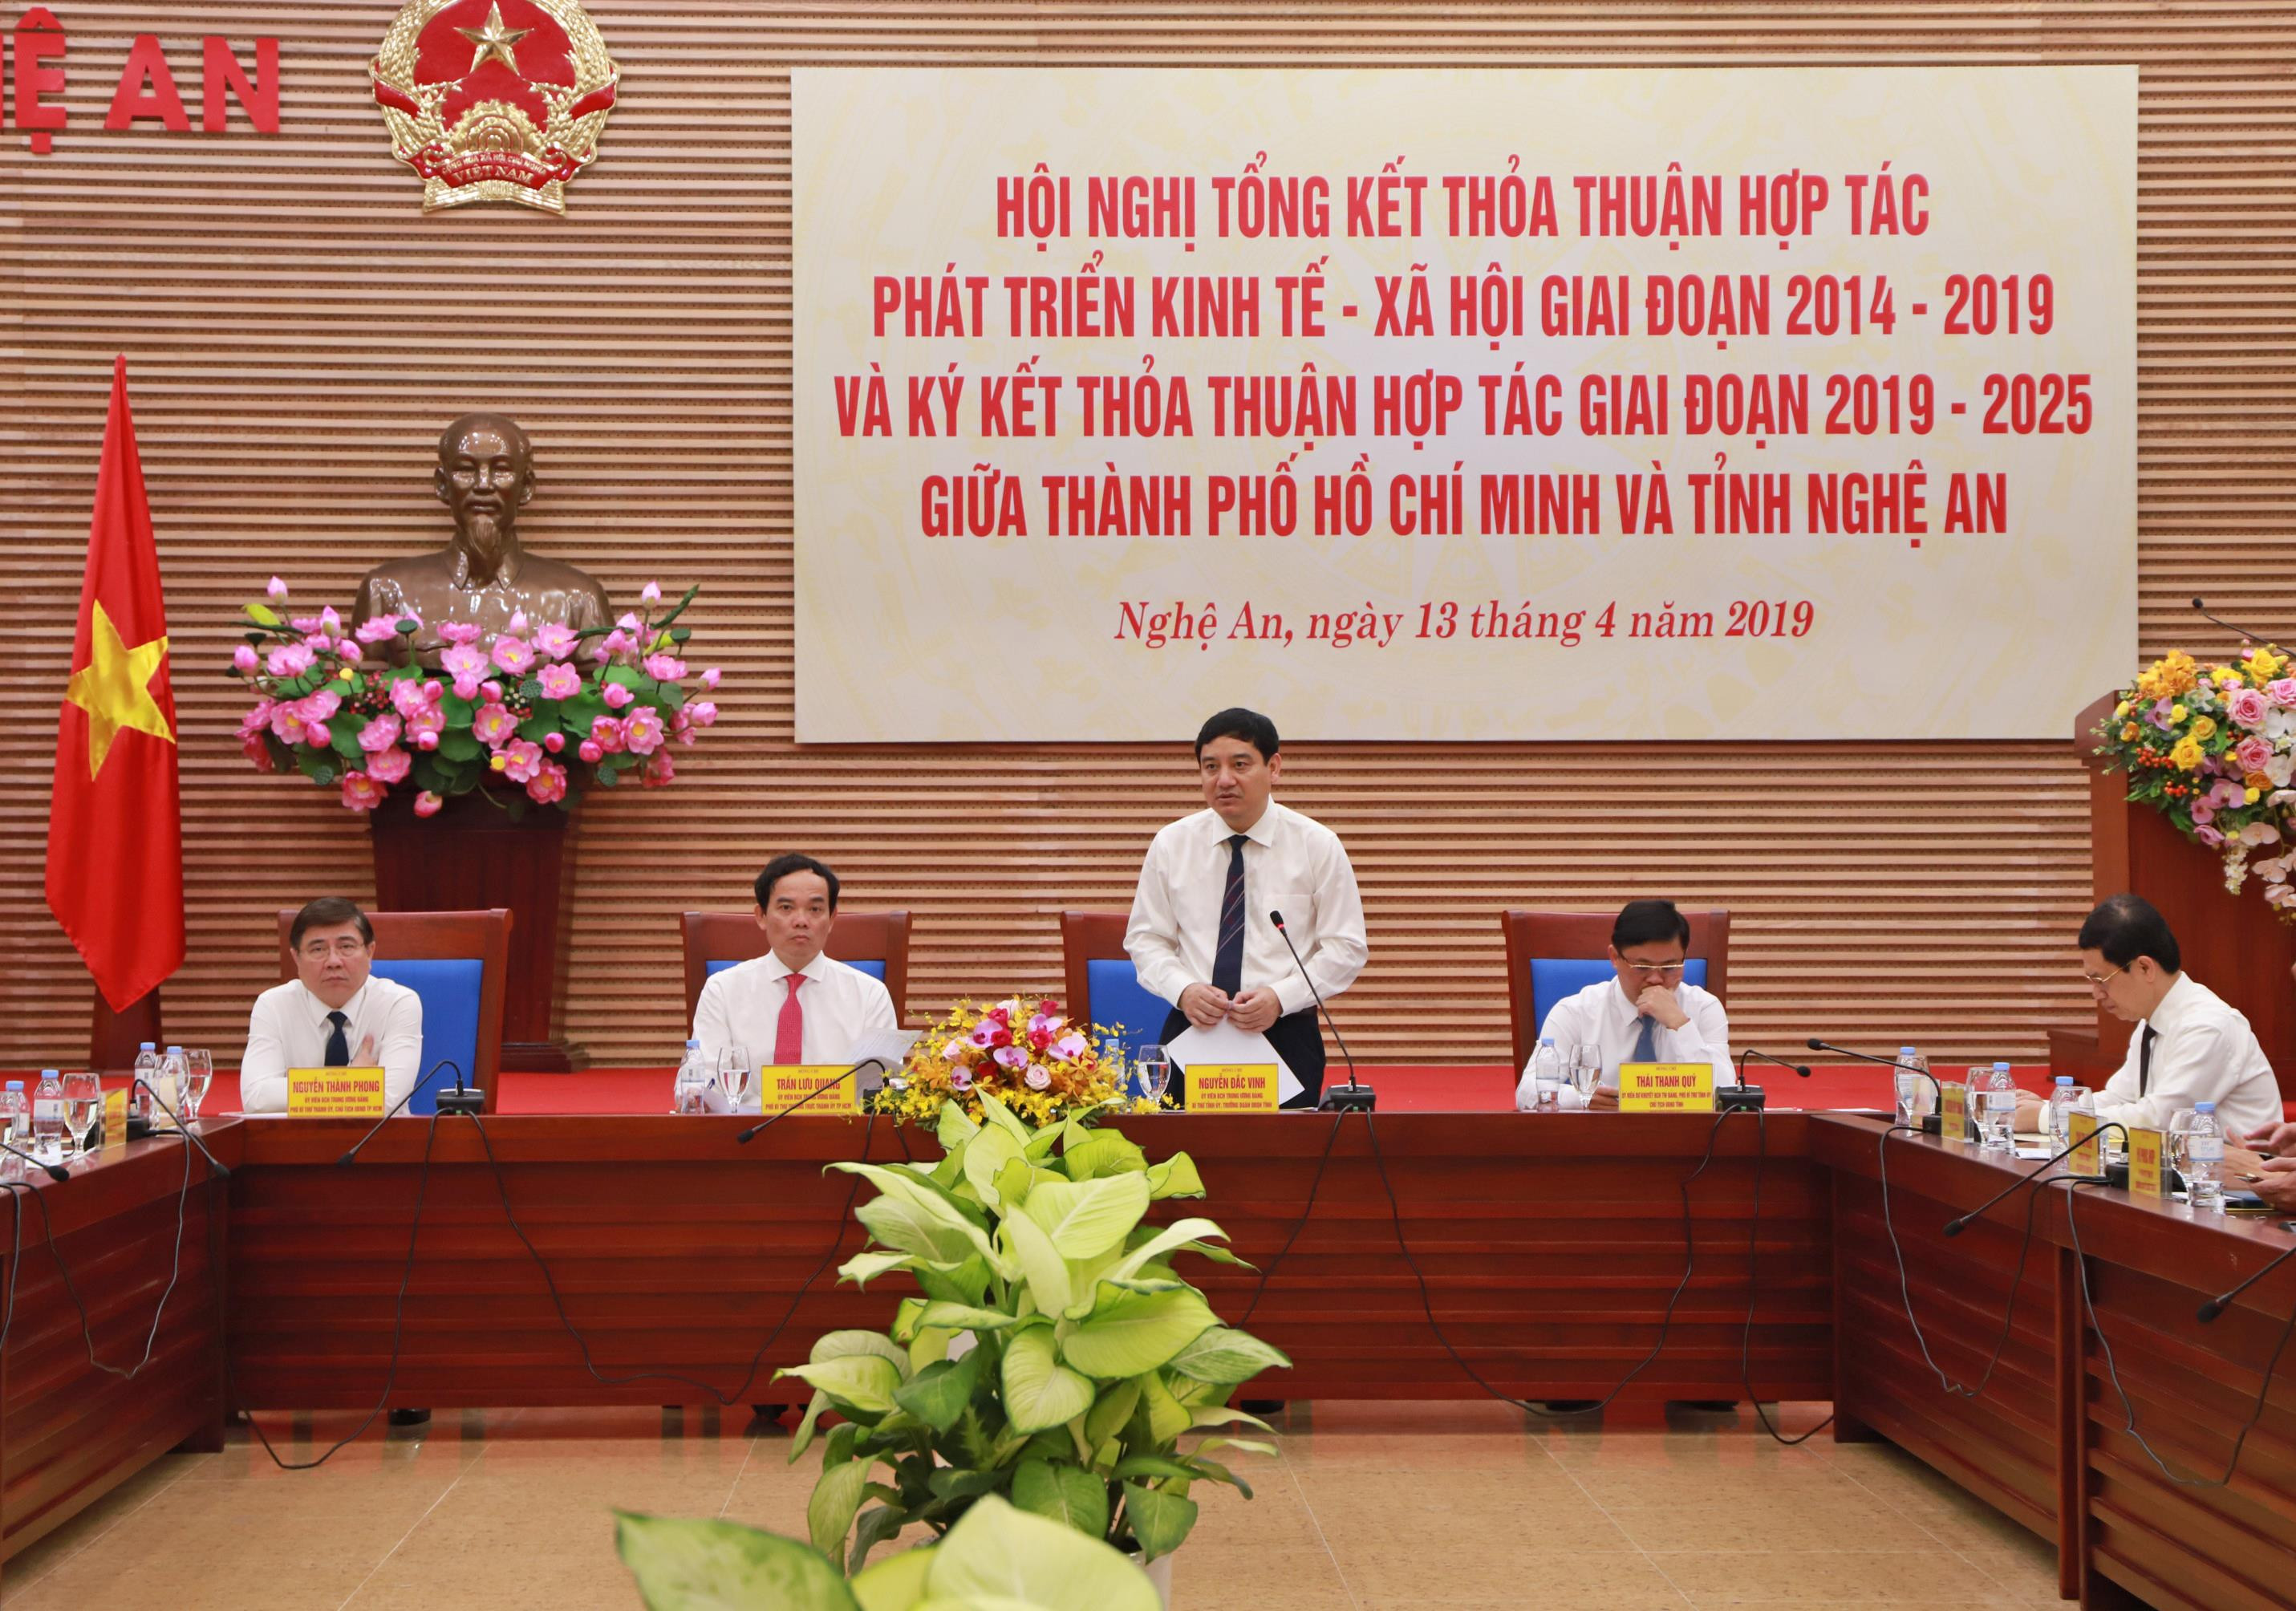 Bí thư Tỉnh ủy Nguyễn Đắc Vinh phát biểu chào mừng đoàn công tác TP. Hồ Chí Minh về tham dự Hội nghị đầy ý nghĩa. Ảnh: Thành Duy